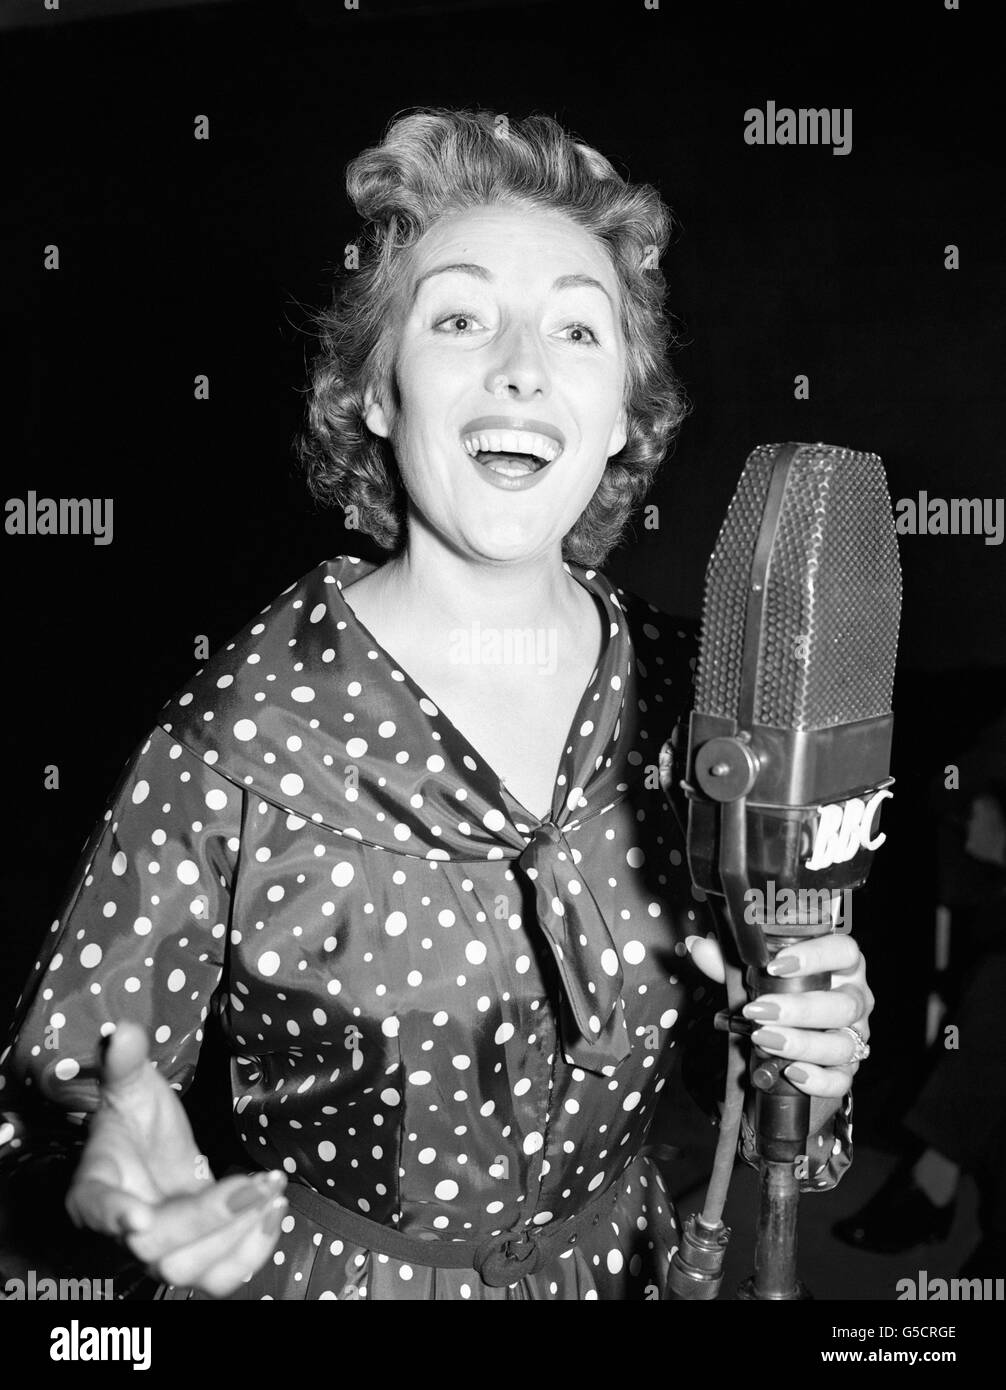 Jetzt ist es „mit freundlichen Grüßen“ von Sängerin Vera Lynn, die in London für ihre neue Radioshow mit diesem Namen Proben. Als Liebling der Streitkräfte im Krieg war Vera's Signature-Melodie 'deins'. Stockfoto